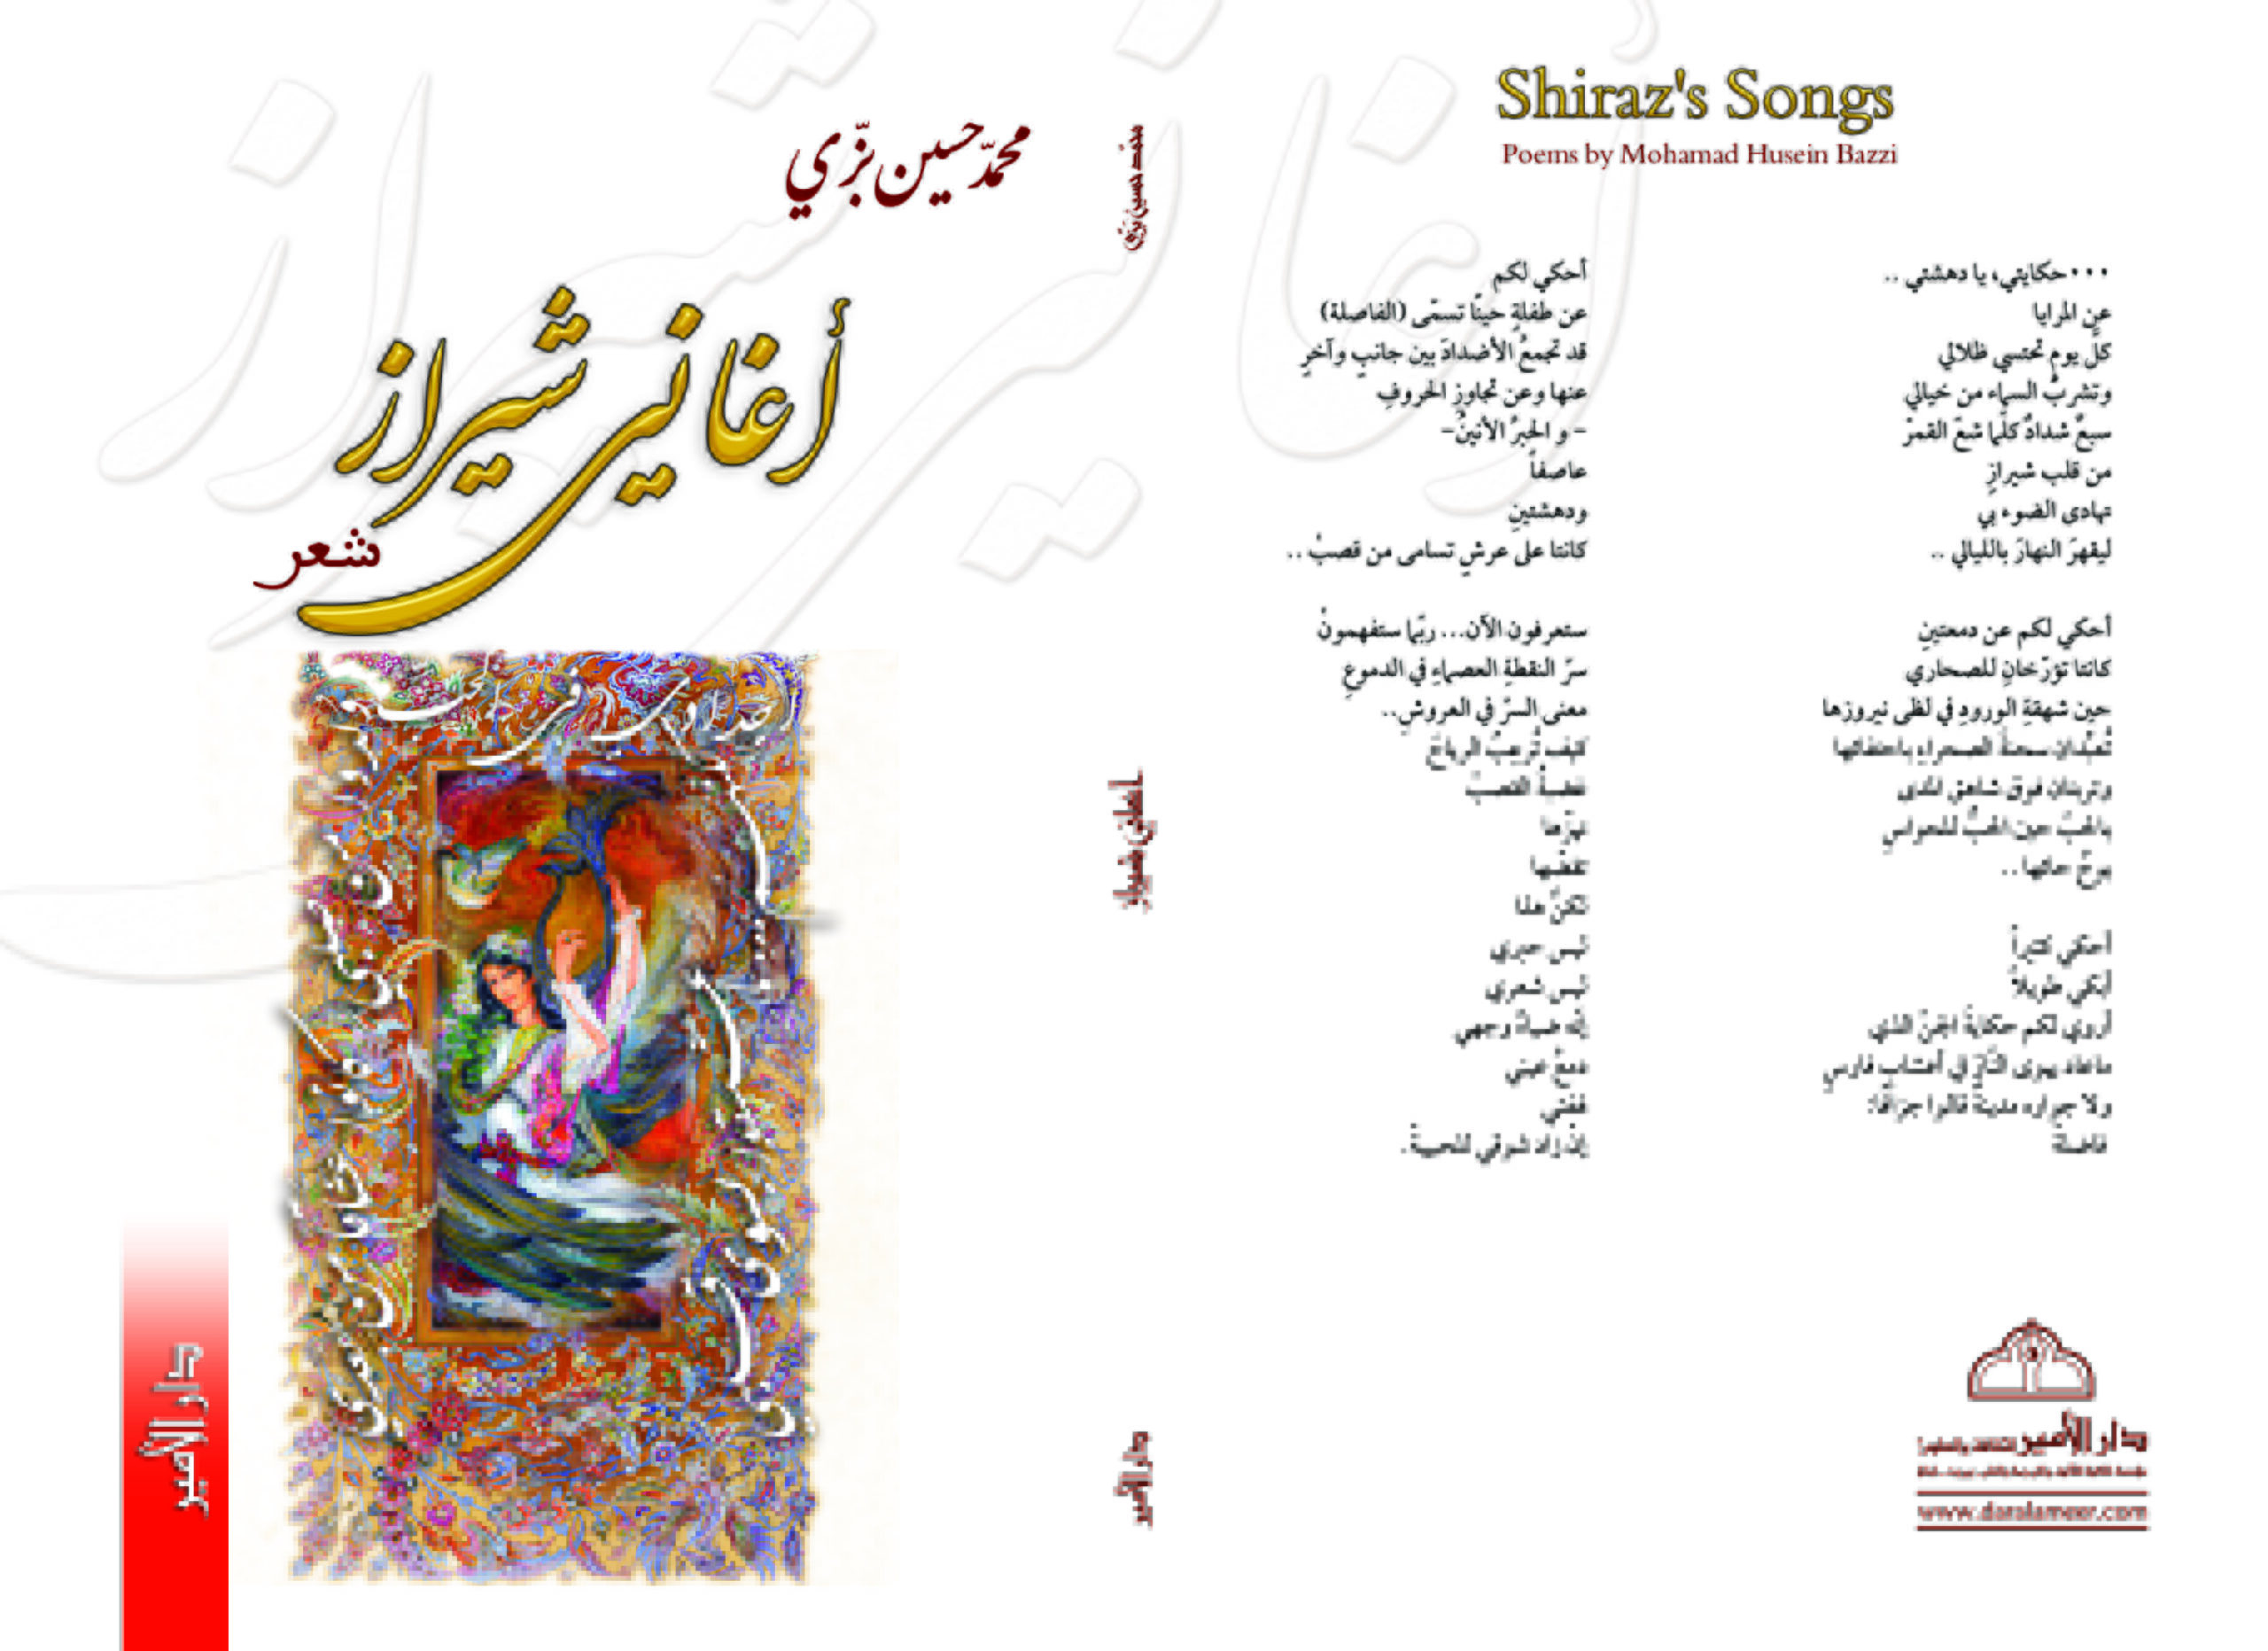 ديوان اغاني شيراز لمحمد حسين بزي